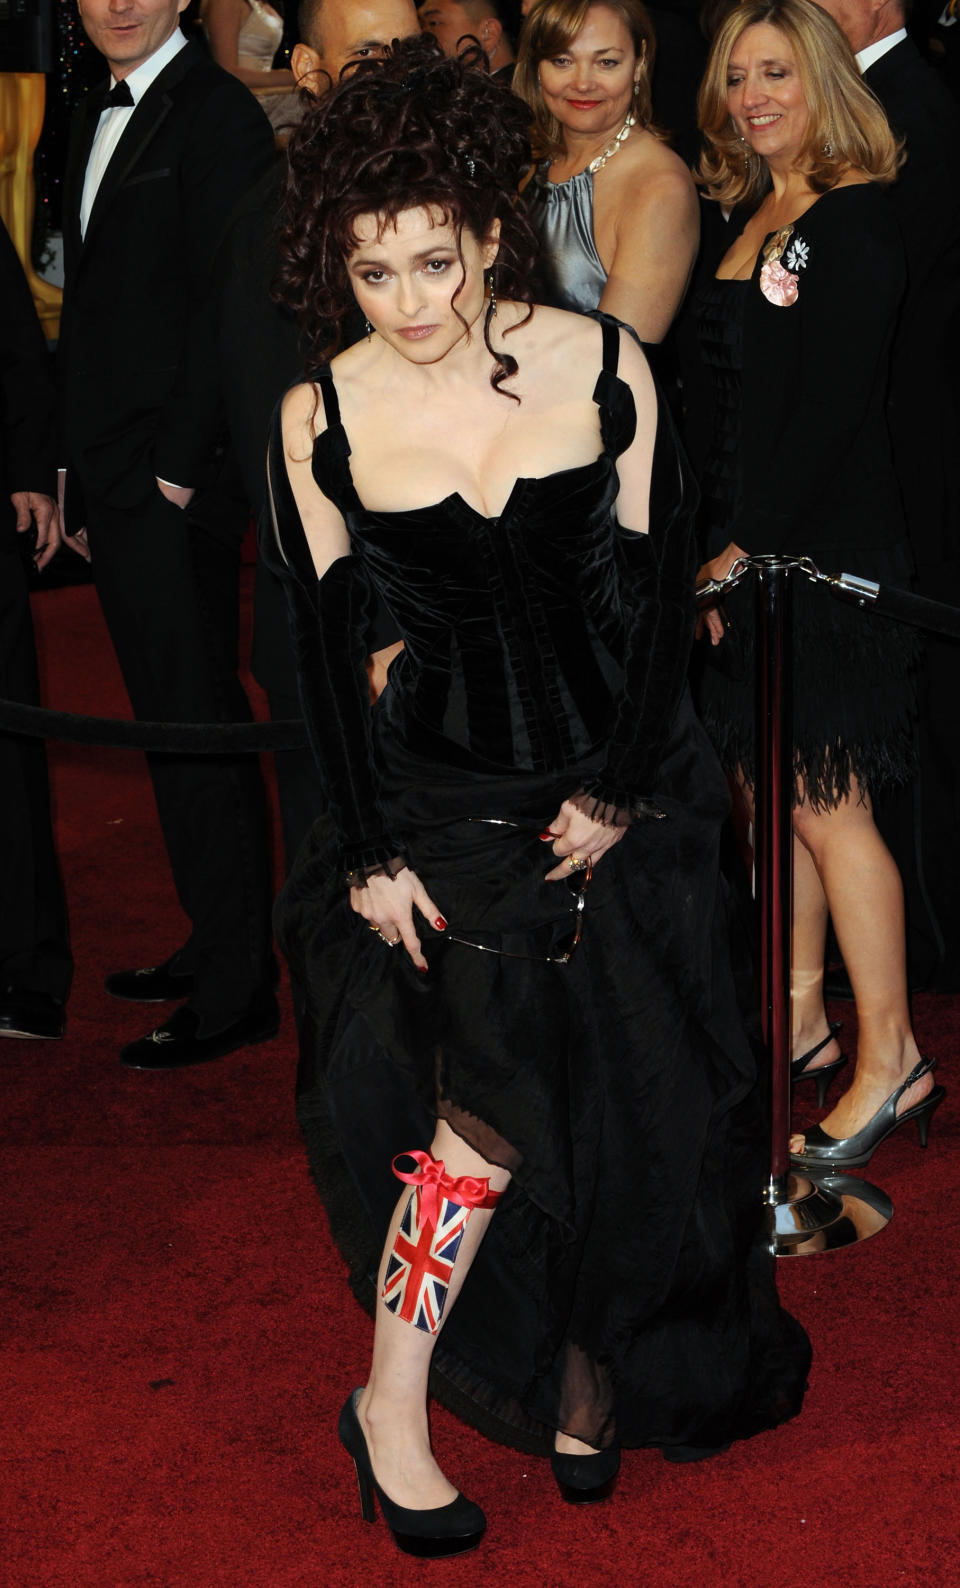 A los Oscars de 2011 acudió en calidad de nominada por 'El discurso del rey' (2010) y luciendo un vestido tipo corsé con detalles de terciopelo de Colleen Atwood. El broche de oro lo pusieron sus medias con la bandera de Reino Unido. (Foto: Jeff Kravitz / Getty Images)